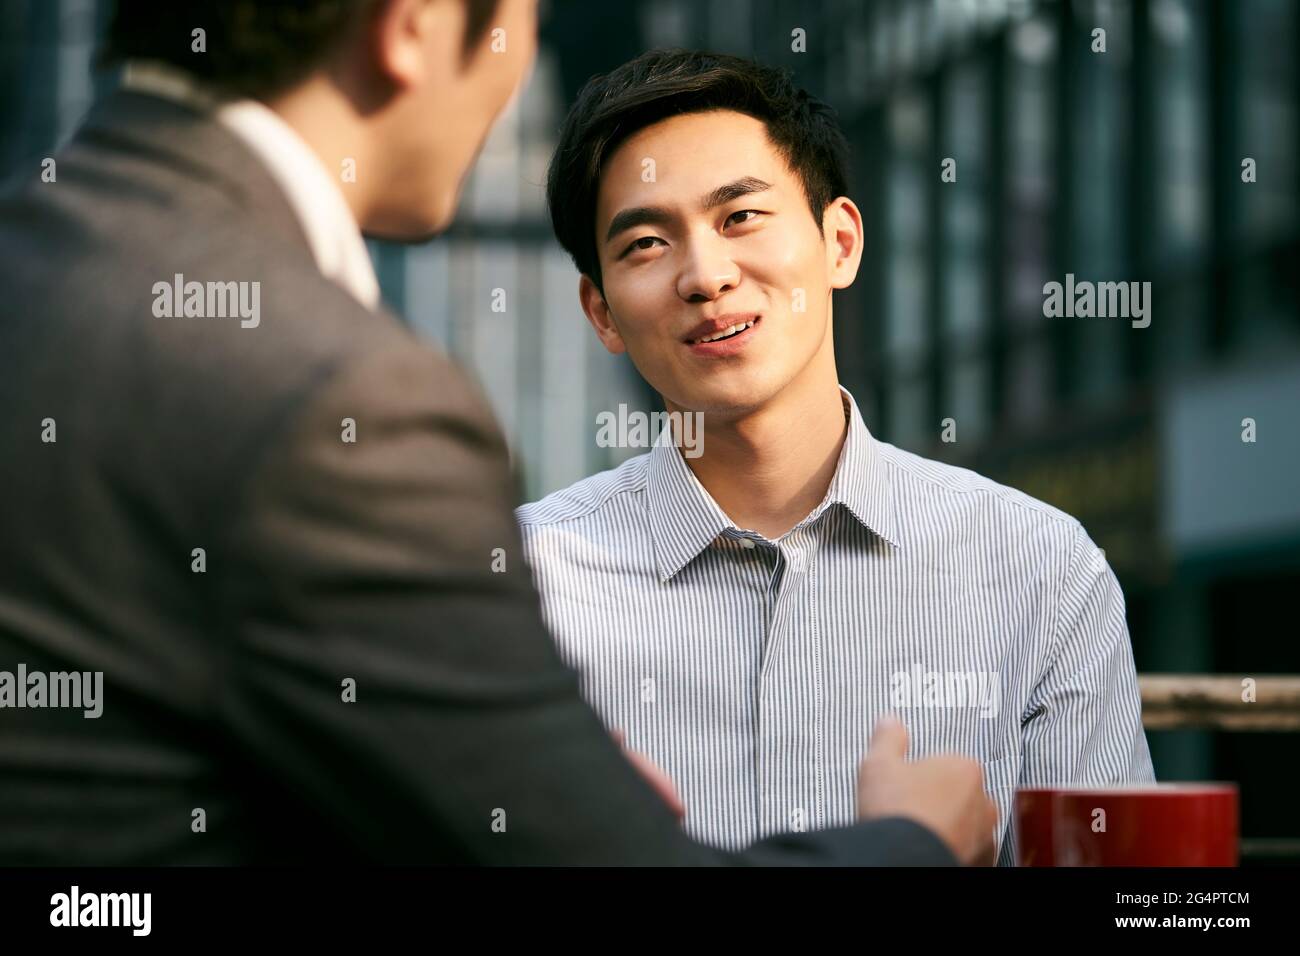 deux hommes d'affaires asiatiques discutent d'affaires lors d'un café en plein air boutique Banque D'Images